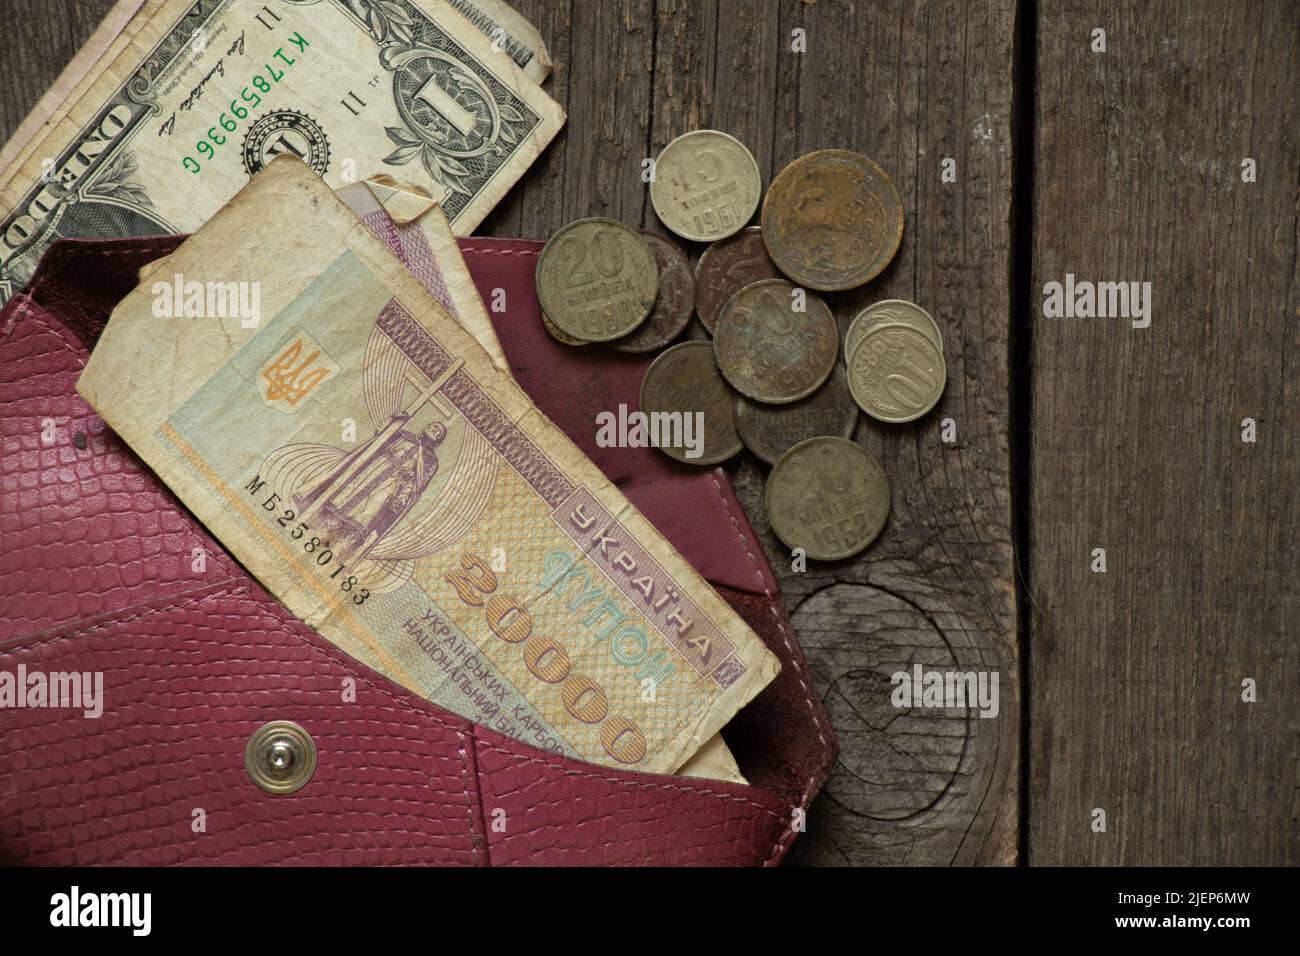 L'unité monétaire du coupon de l'État ukrainien et les pièces de l'urss se trouvent sur la table dans, l'ancienne monnaie soviétique, les pièces et les coupons, la finance Banque D'Images